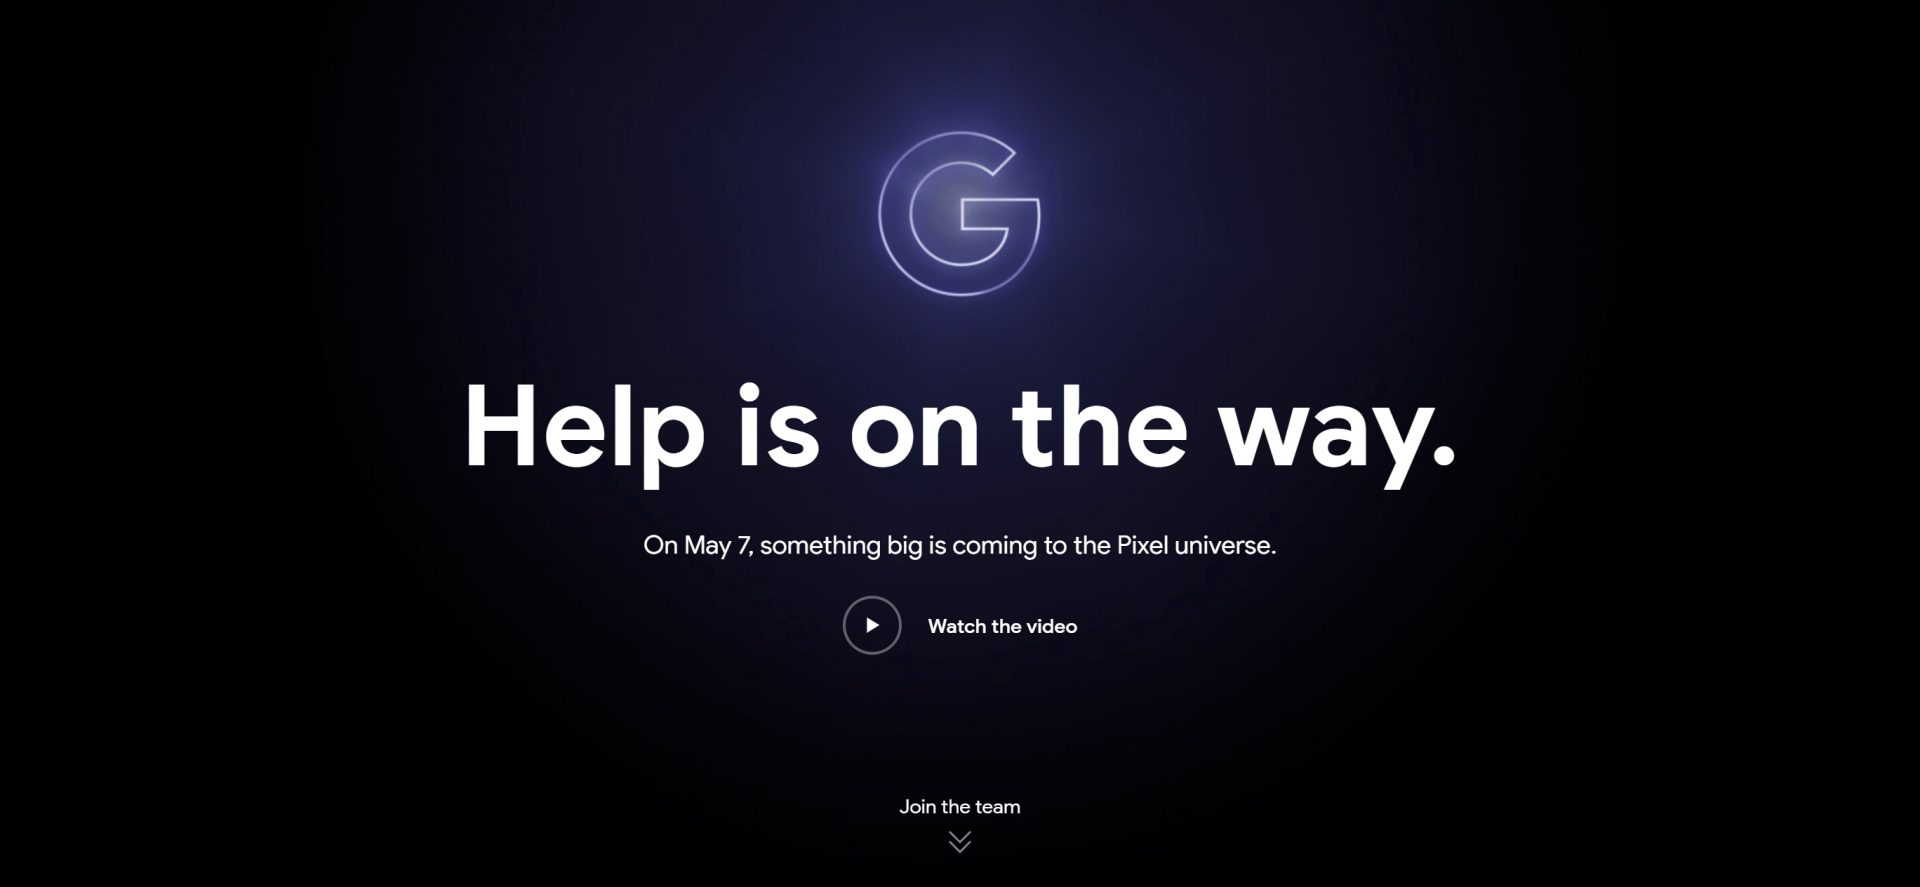 Google เตรียมเปิดตัว Pixel รุ่นใหม่ร่วมกับ Avengers: End Game 7 พฤษภาคมนี้